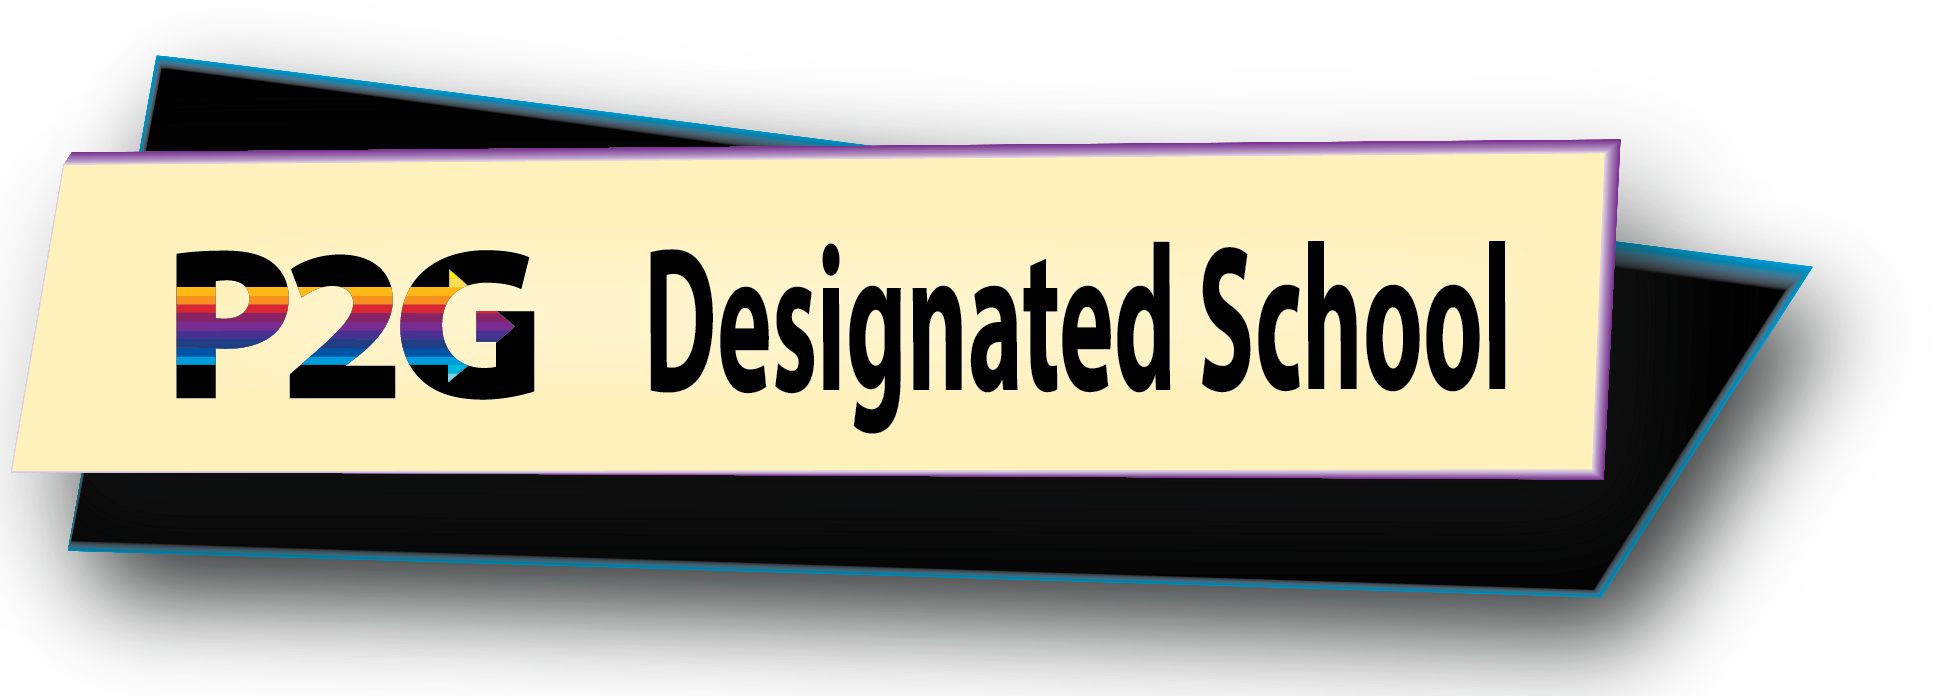 P2g designated school